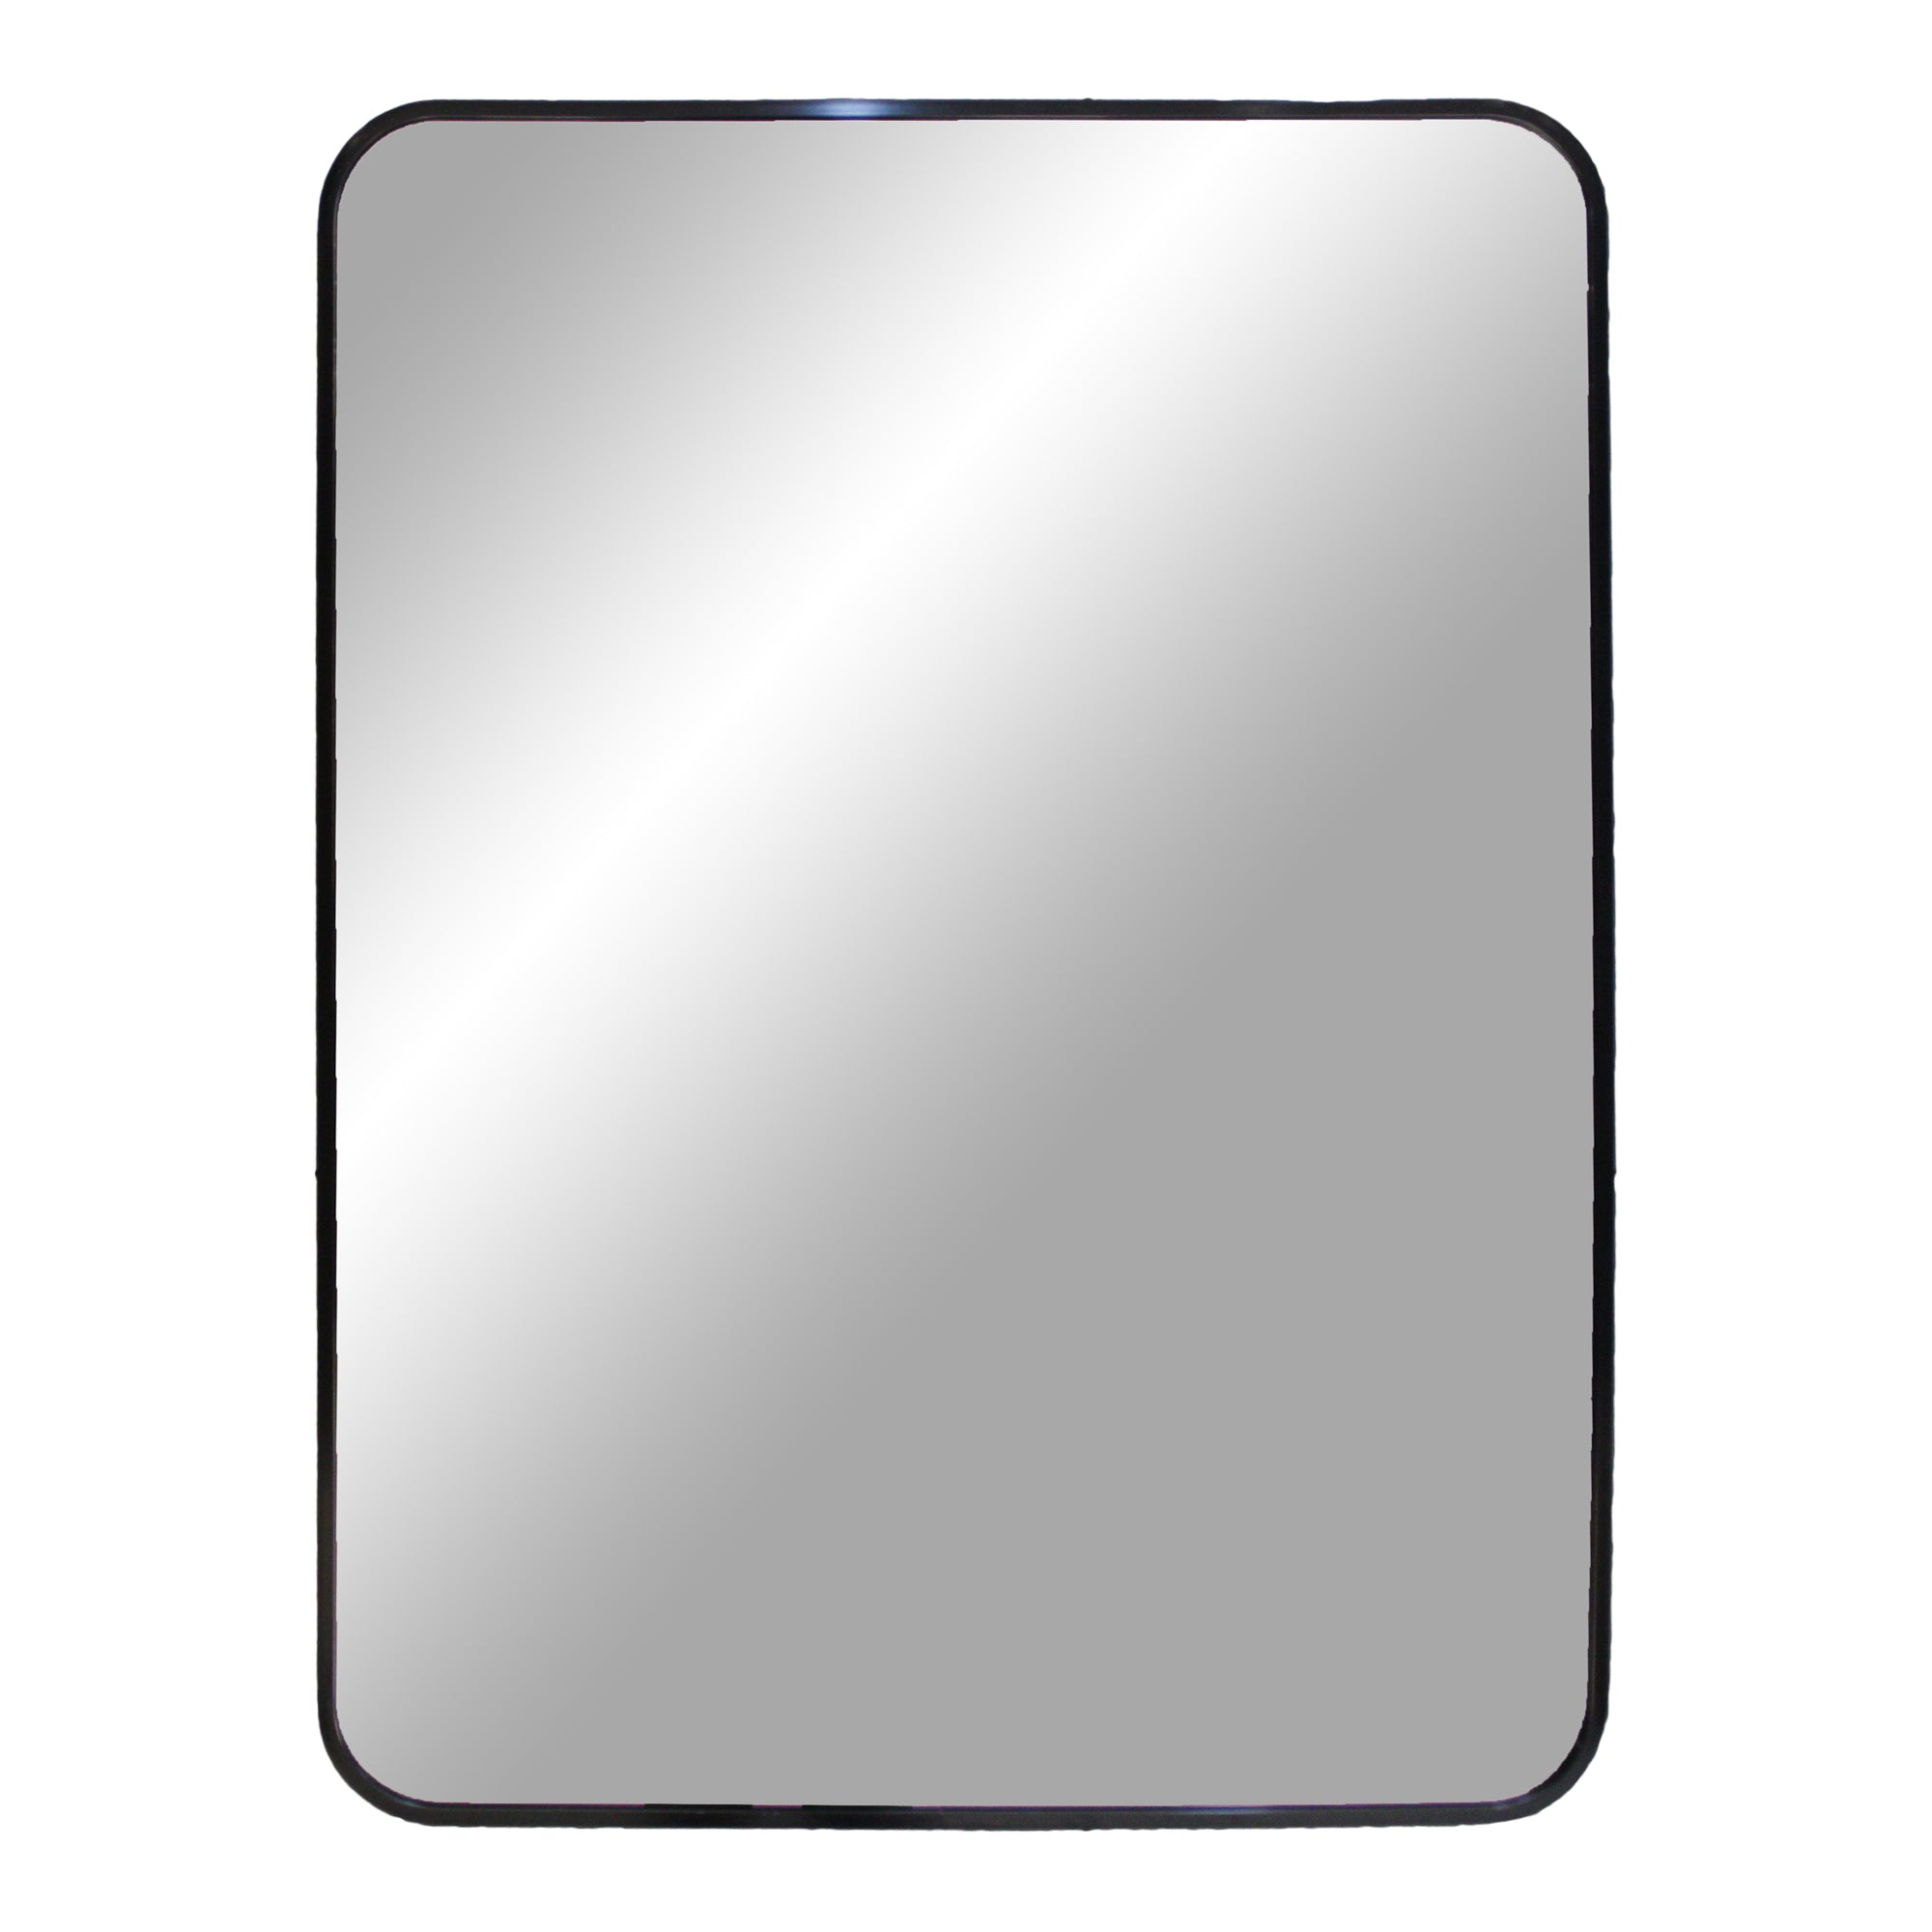 Billede af Madrid Spejl - Spejl i aluminium, sort, 50x70 cm hos Lammeuld.dk